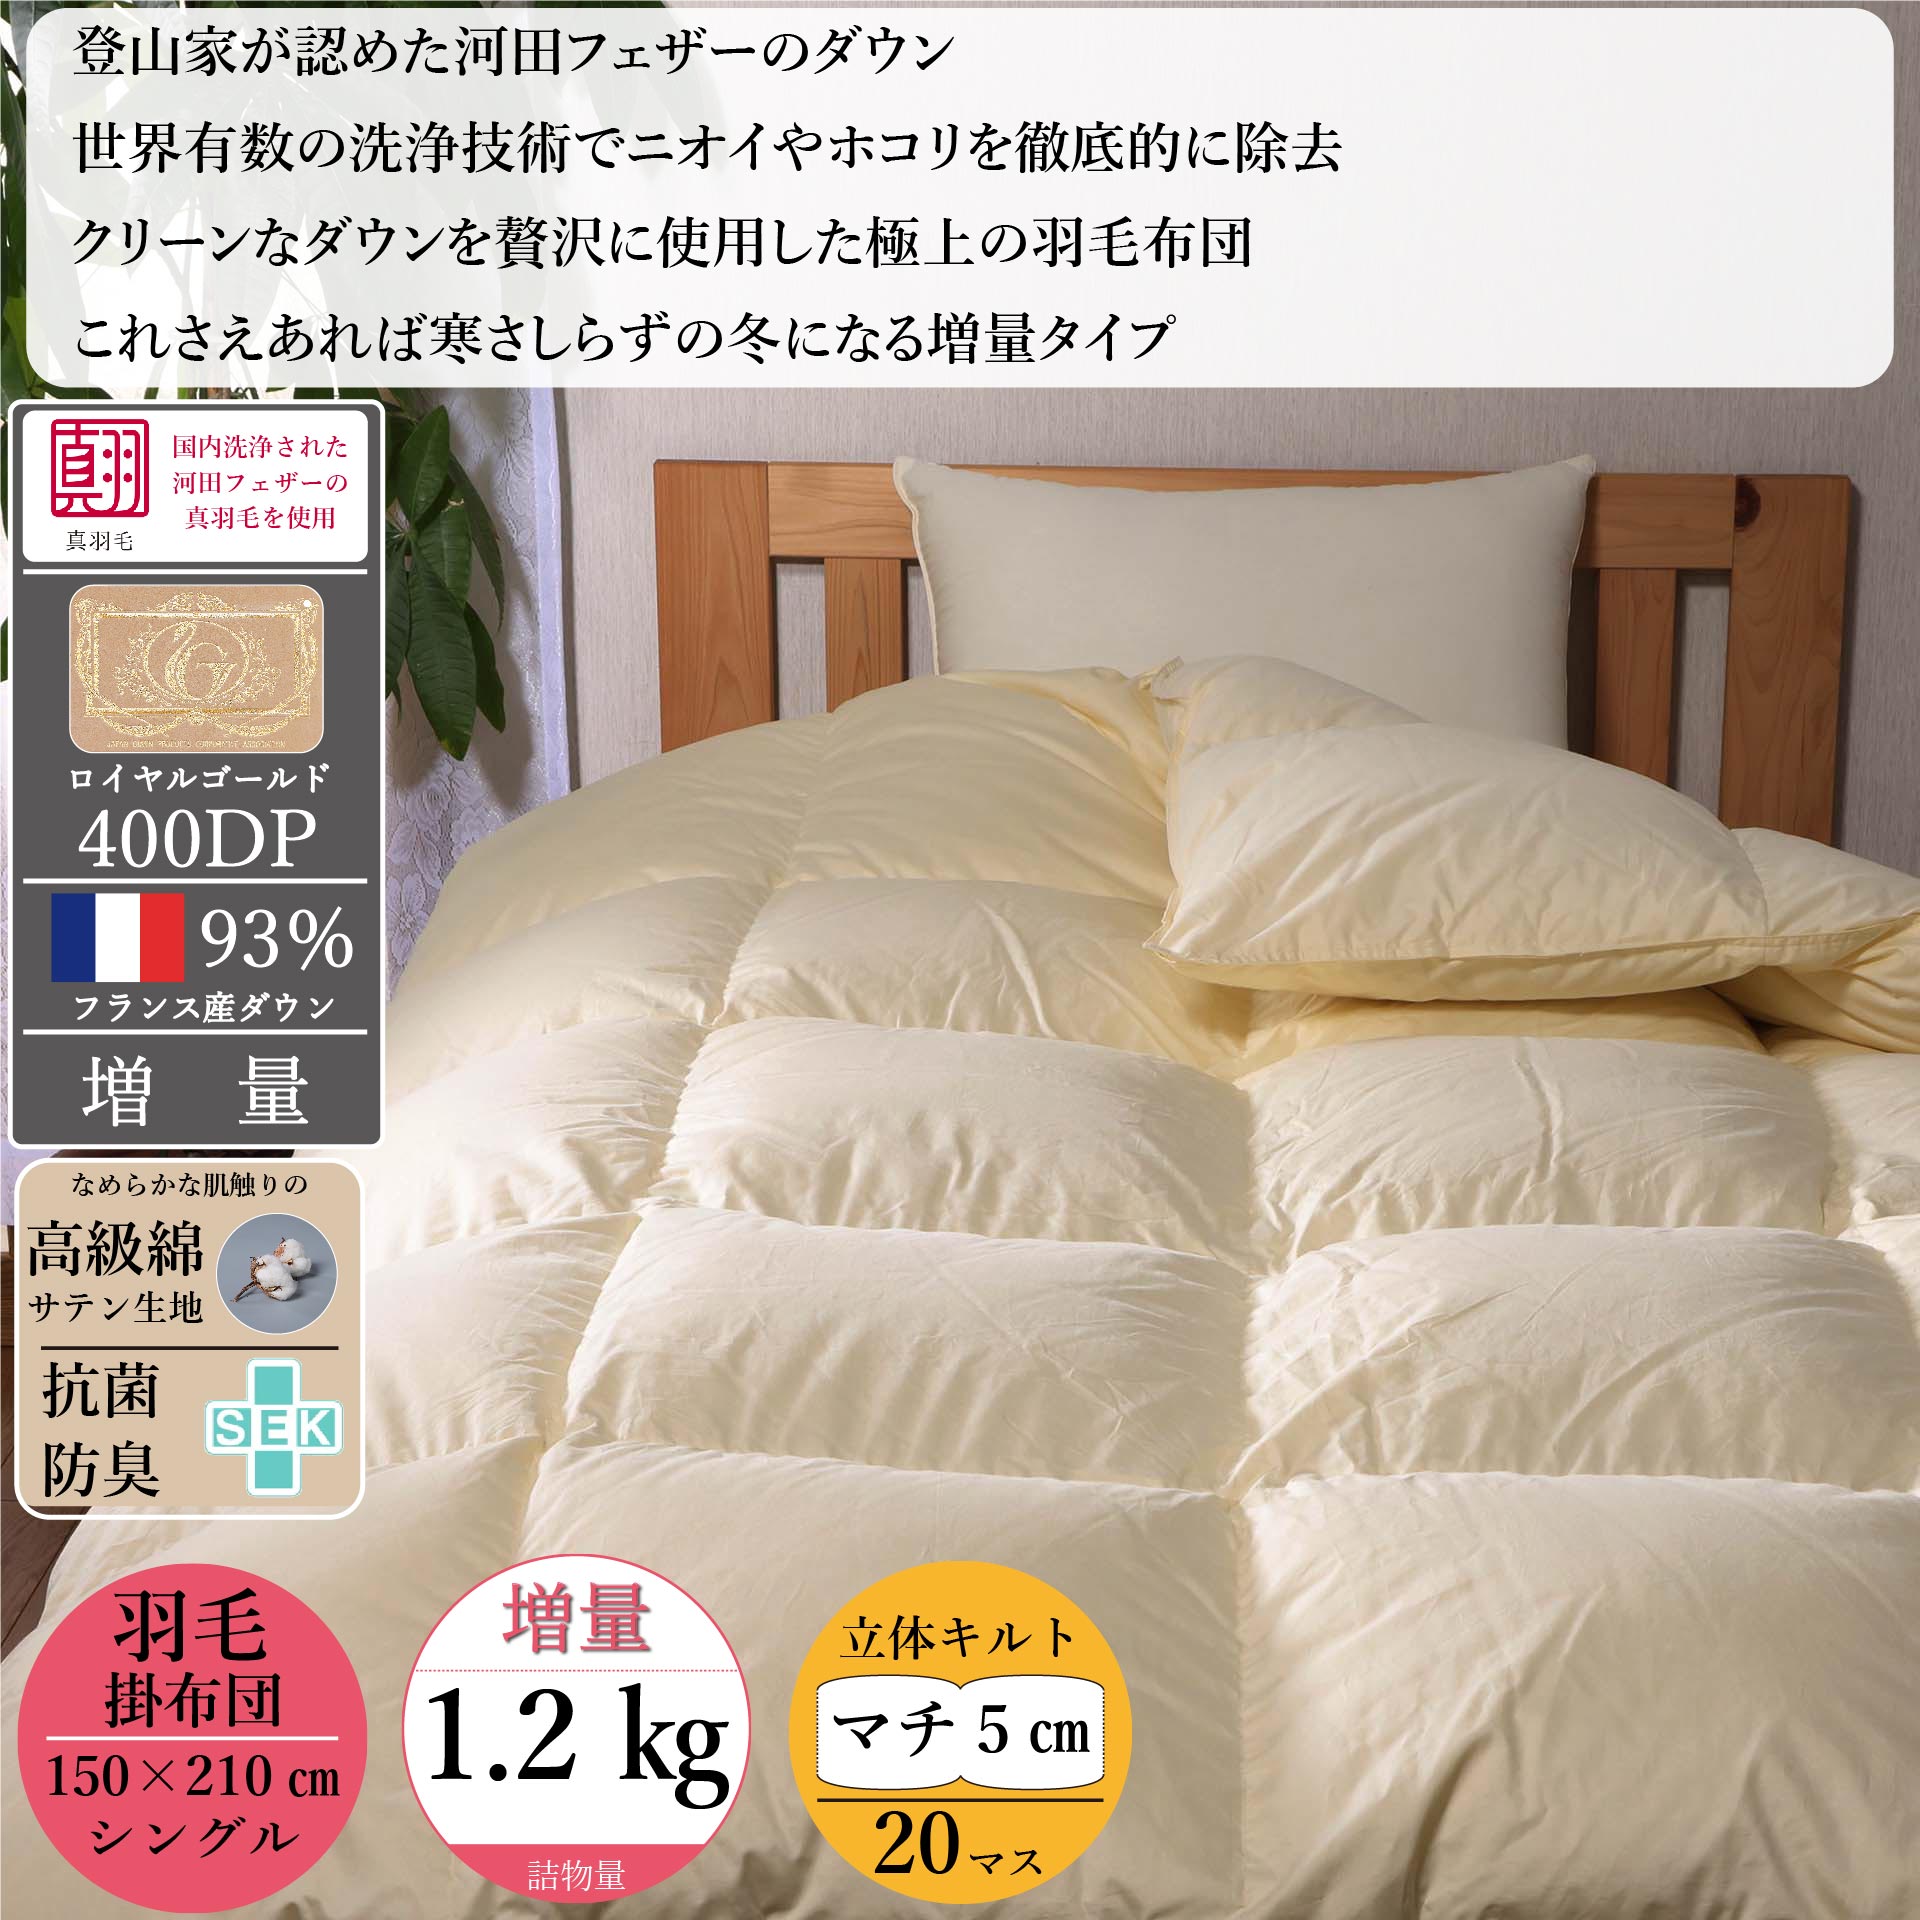 羽毛布団 日本製 ダブルサイズ エクセルゴールド 綿100%生地 増量タイプ-